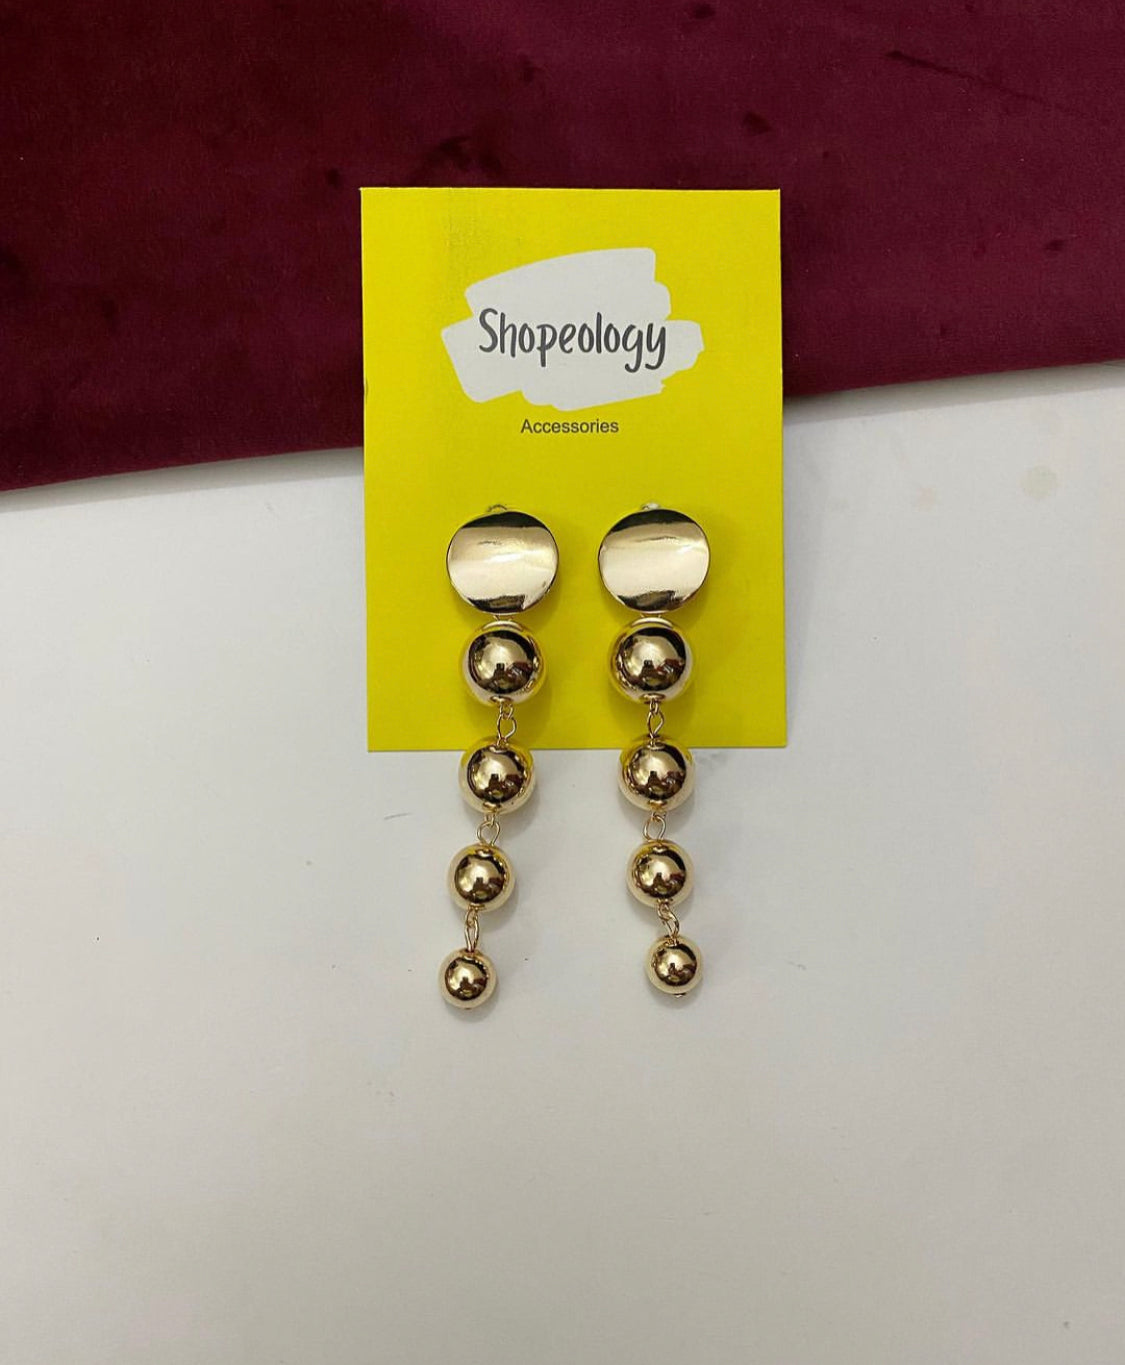 Dangling drop earrings